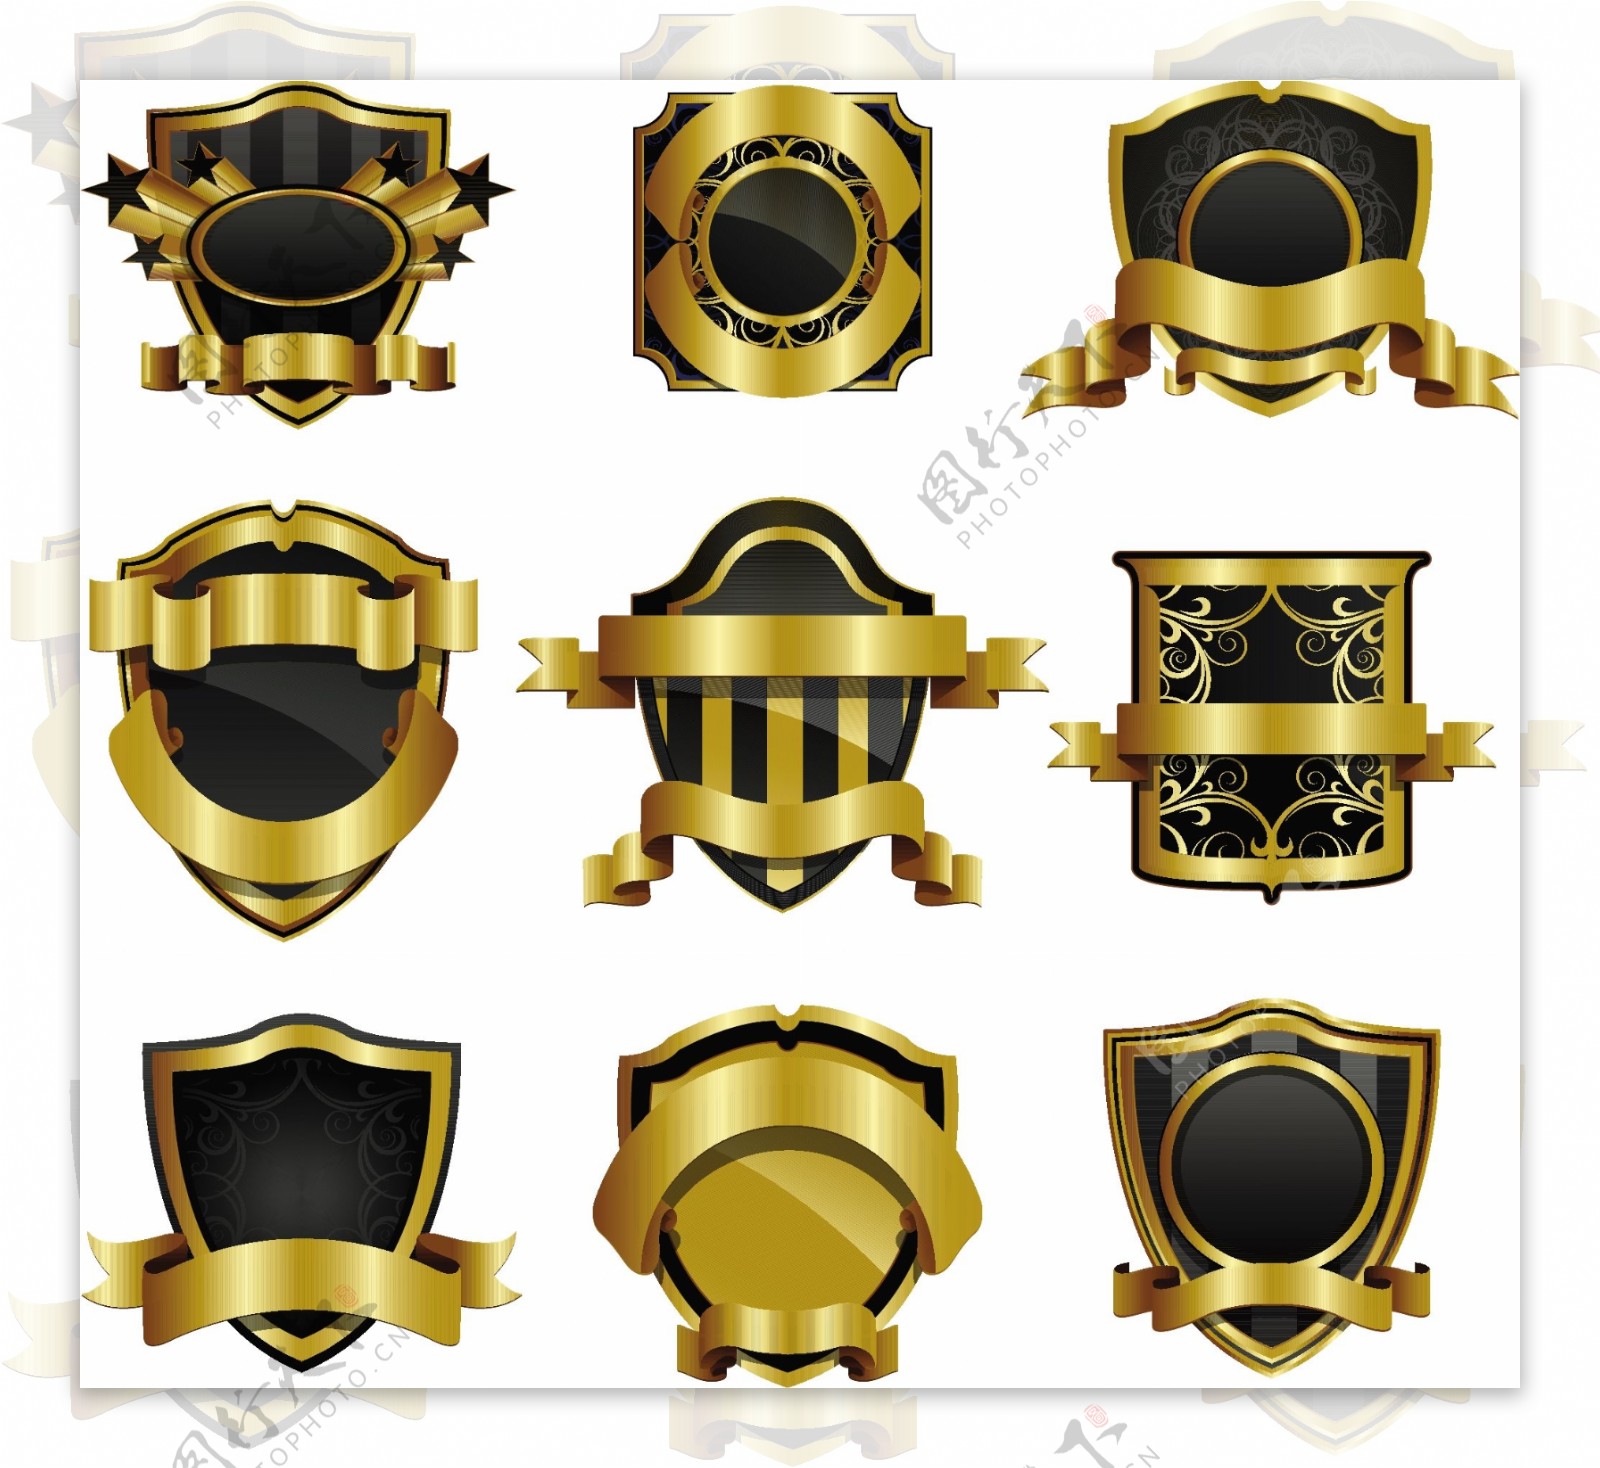 黄金盾牌徽章矢量素材欧洲古典的标签